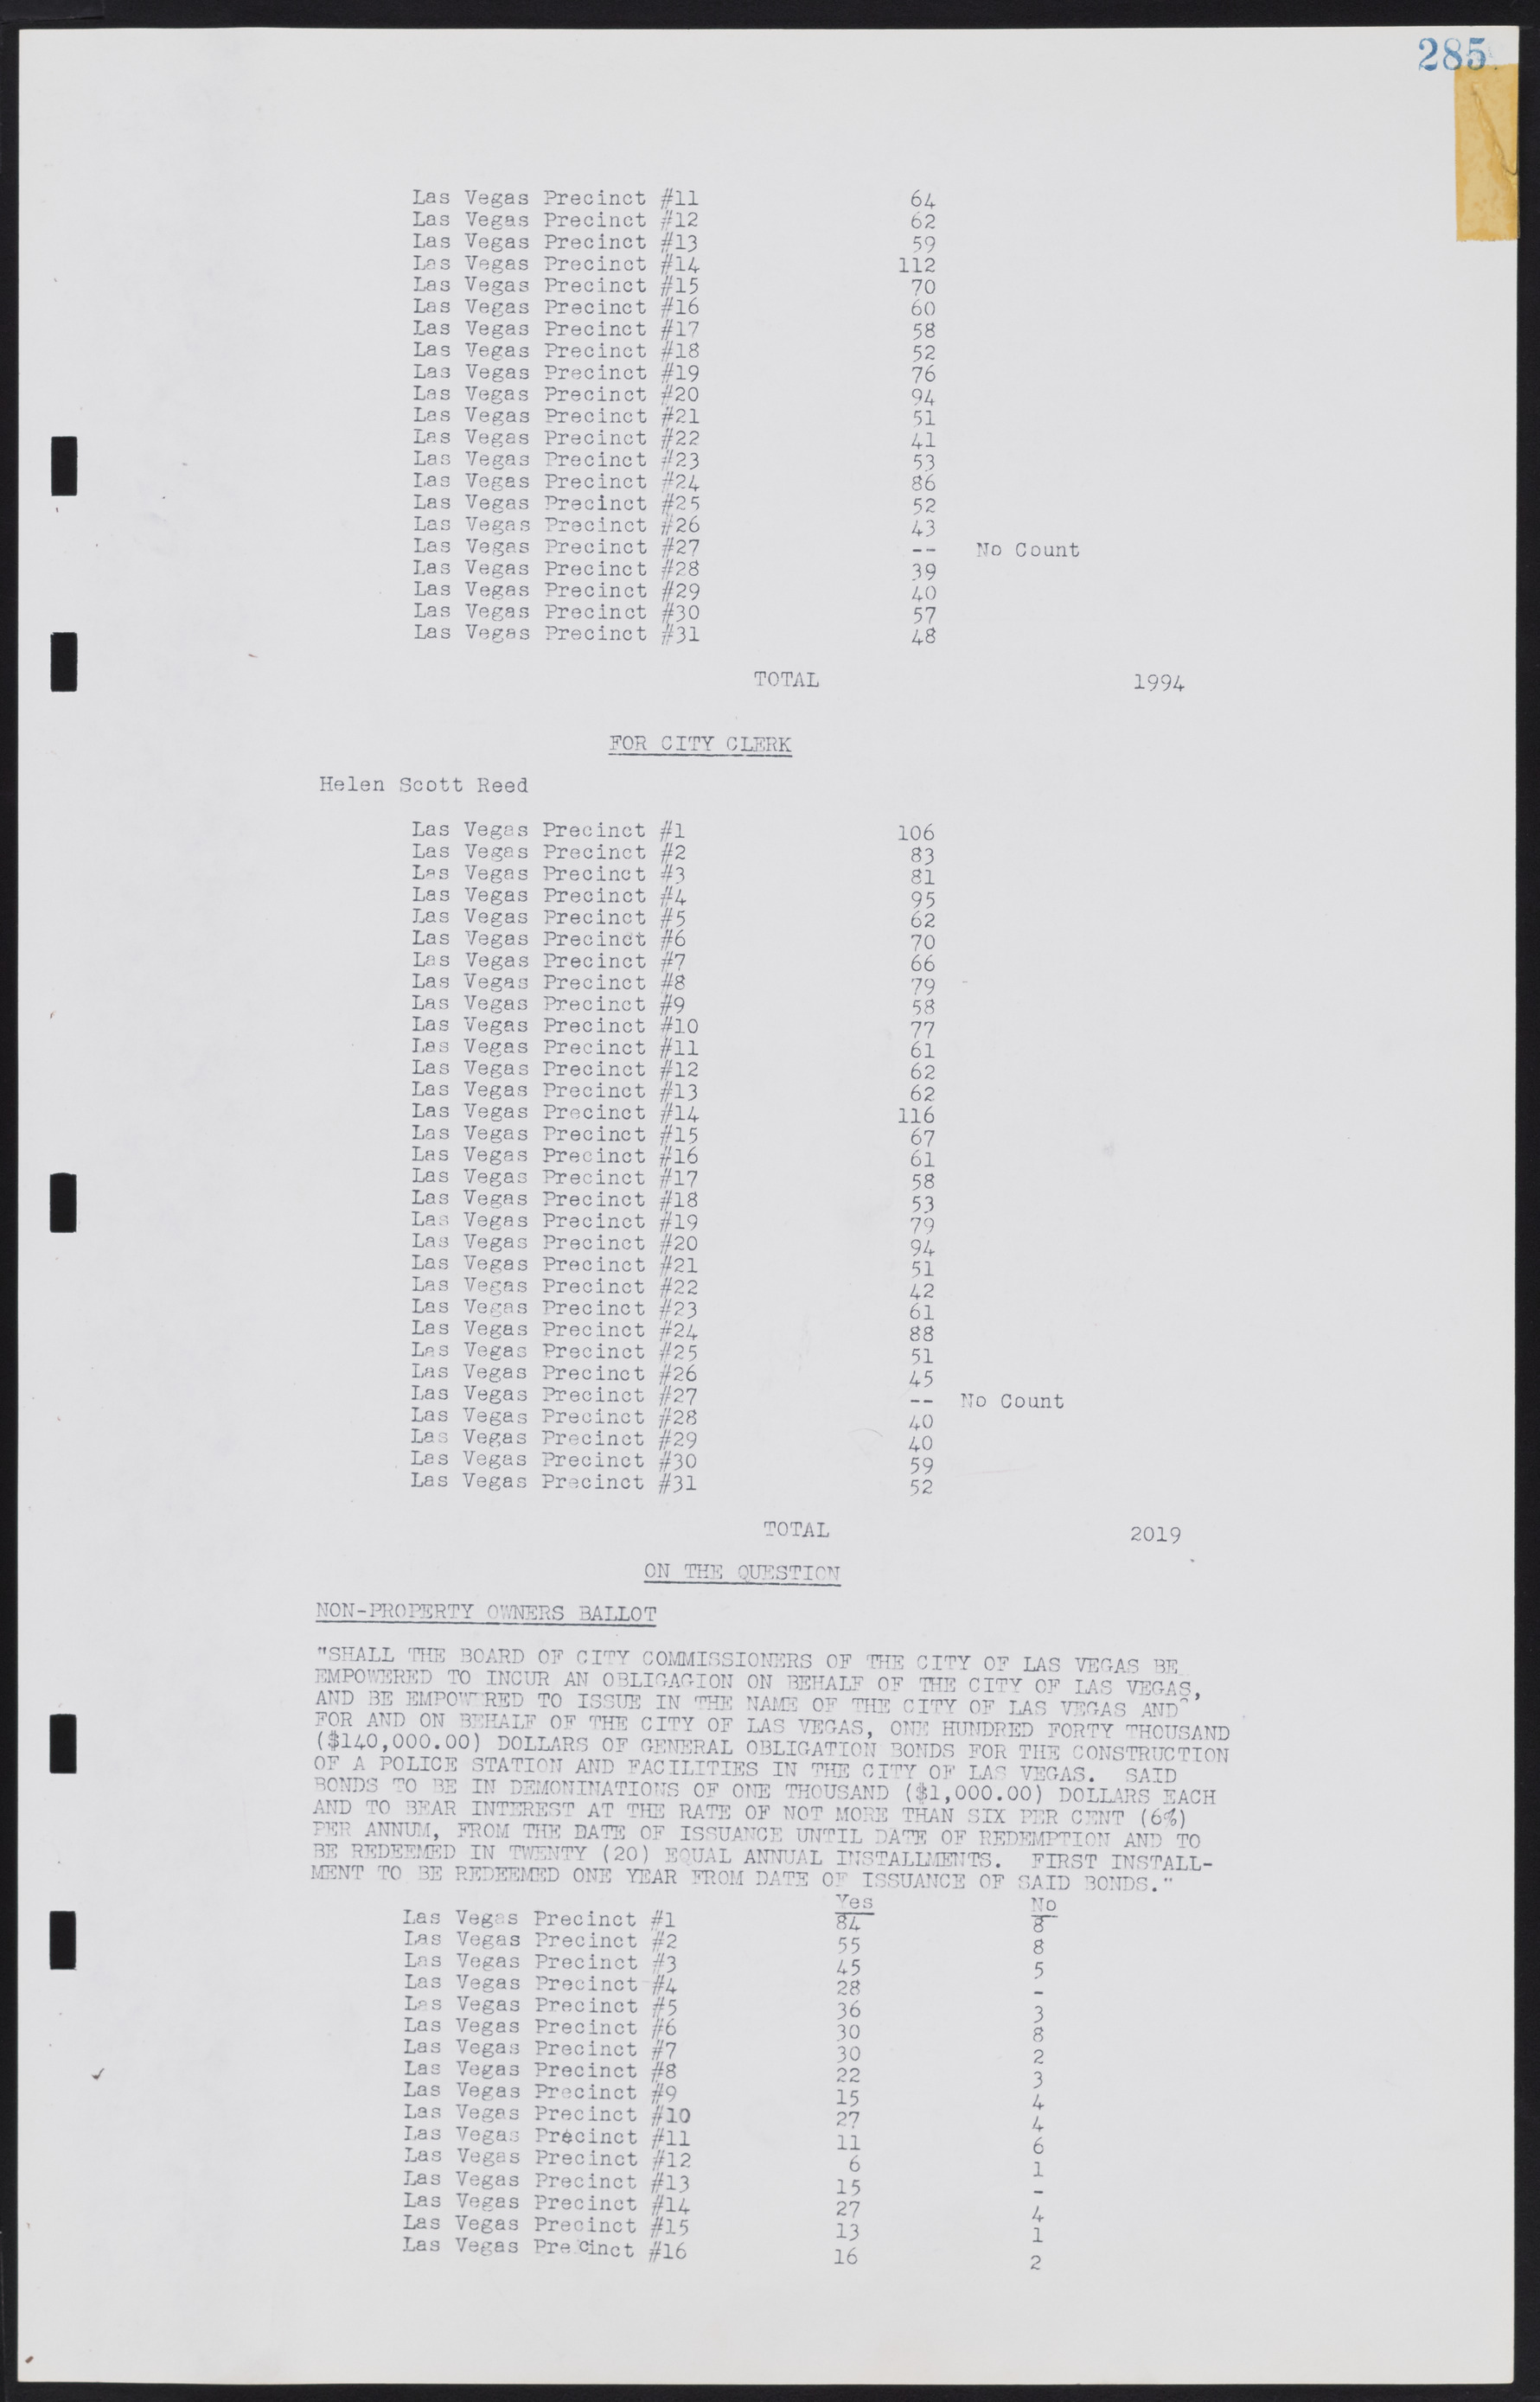 Las Vegas City Commission Minutes, August 11, 1942 to December 30, 1946, lvc000005-307